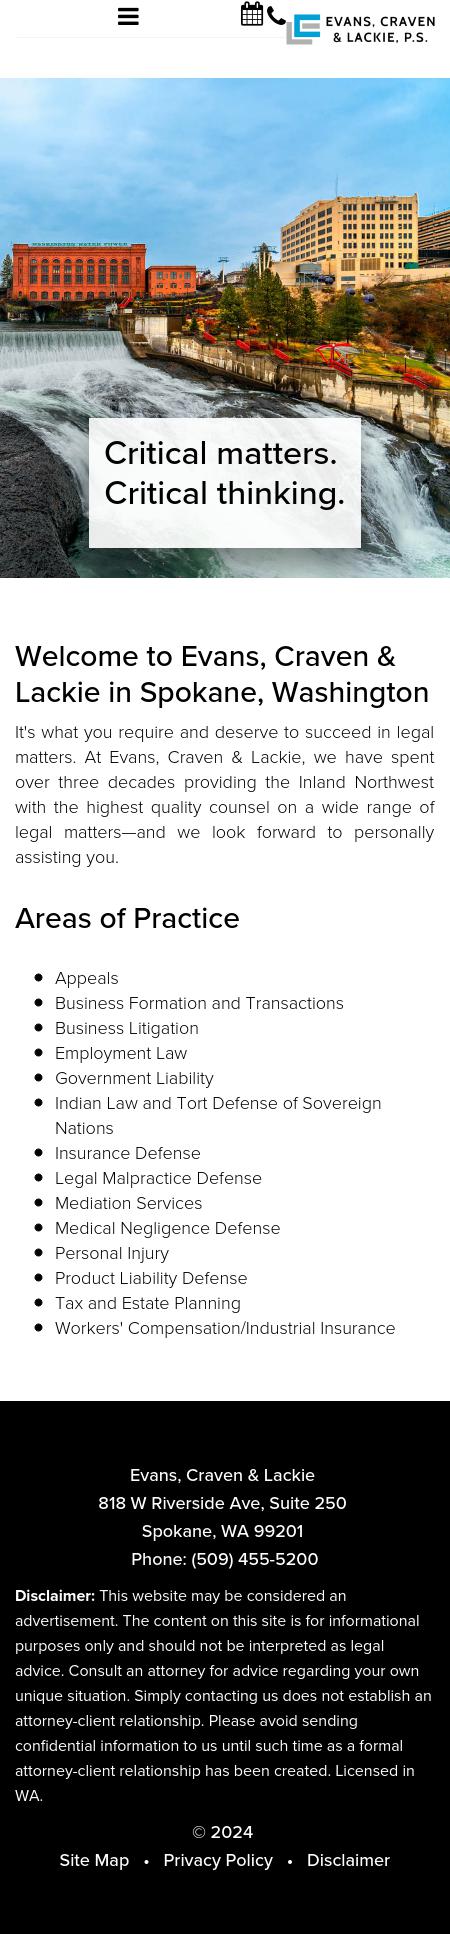 Evans Craven & Lackie PS. - Spokane WA Lawyers